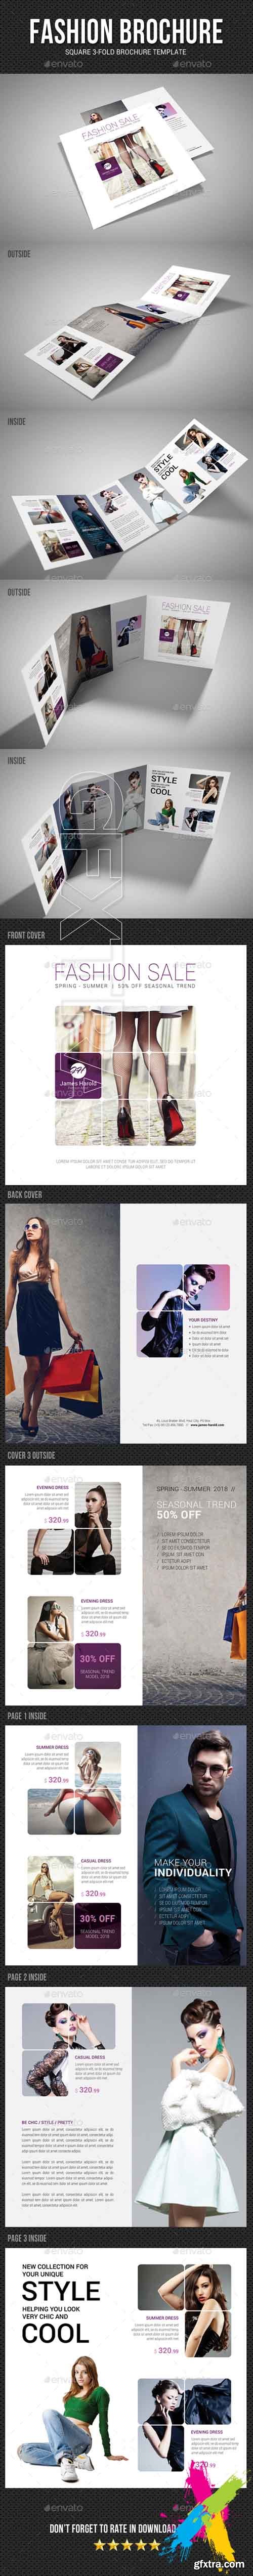 Graphicriver - Square Tri-Fold Fashion Brochure 03 20264840